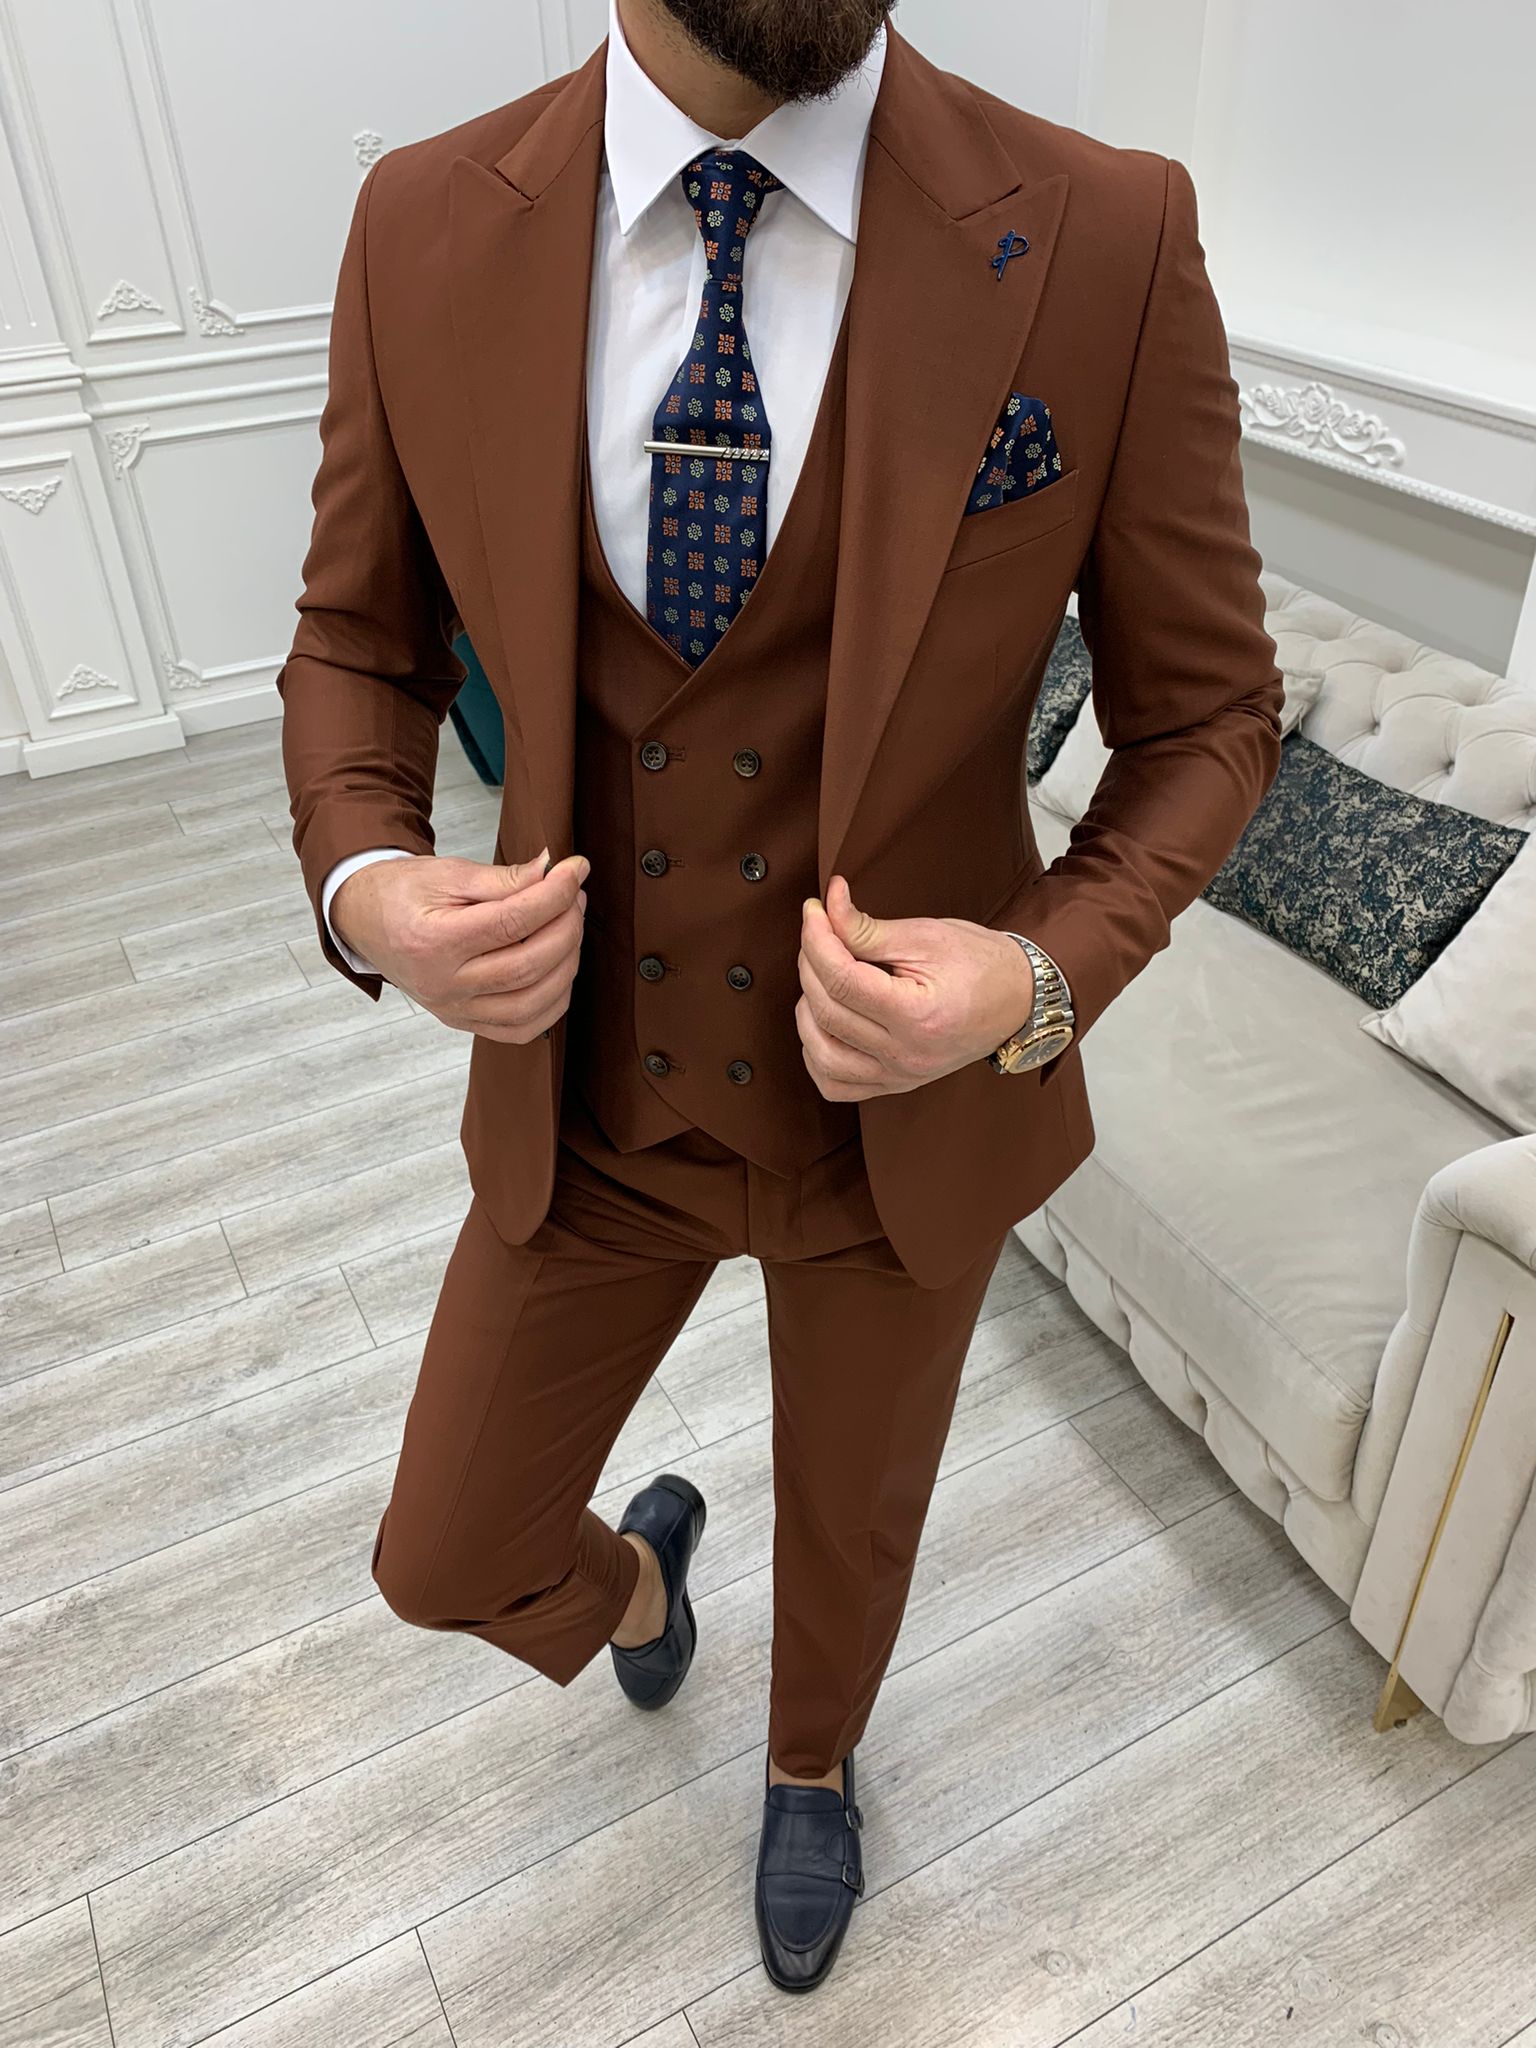 Popular Suit Styles - Italian v British v American- Hidalgo Brothers